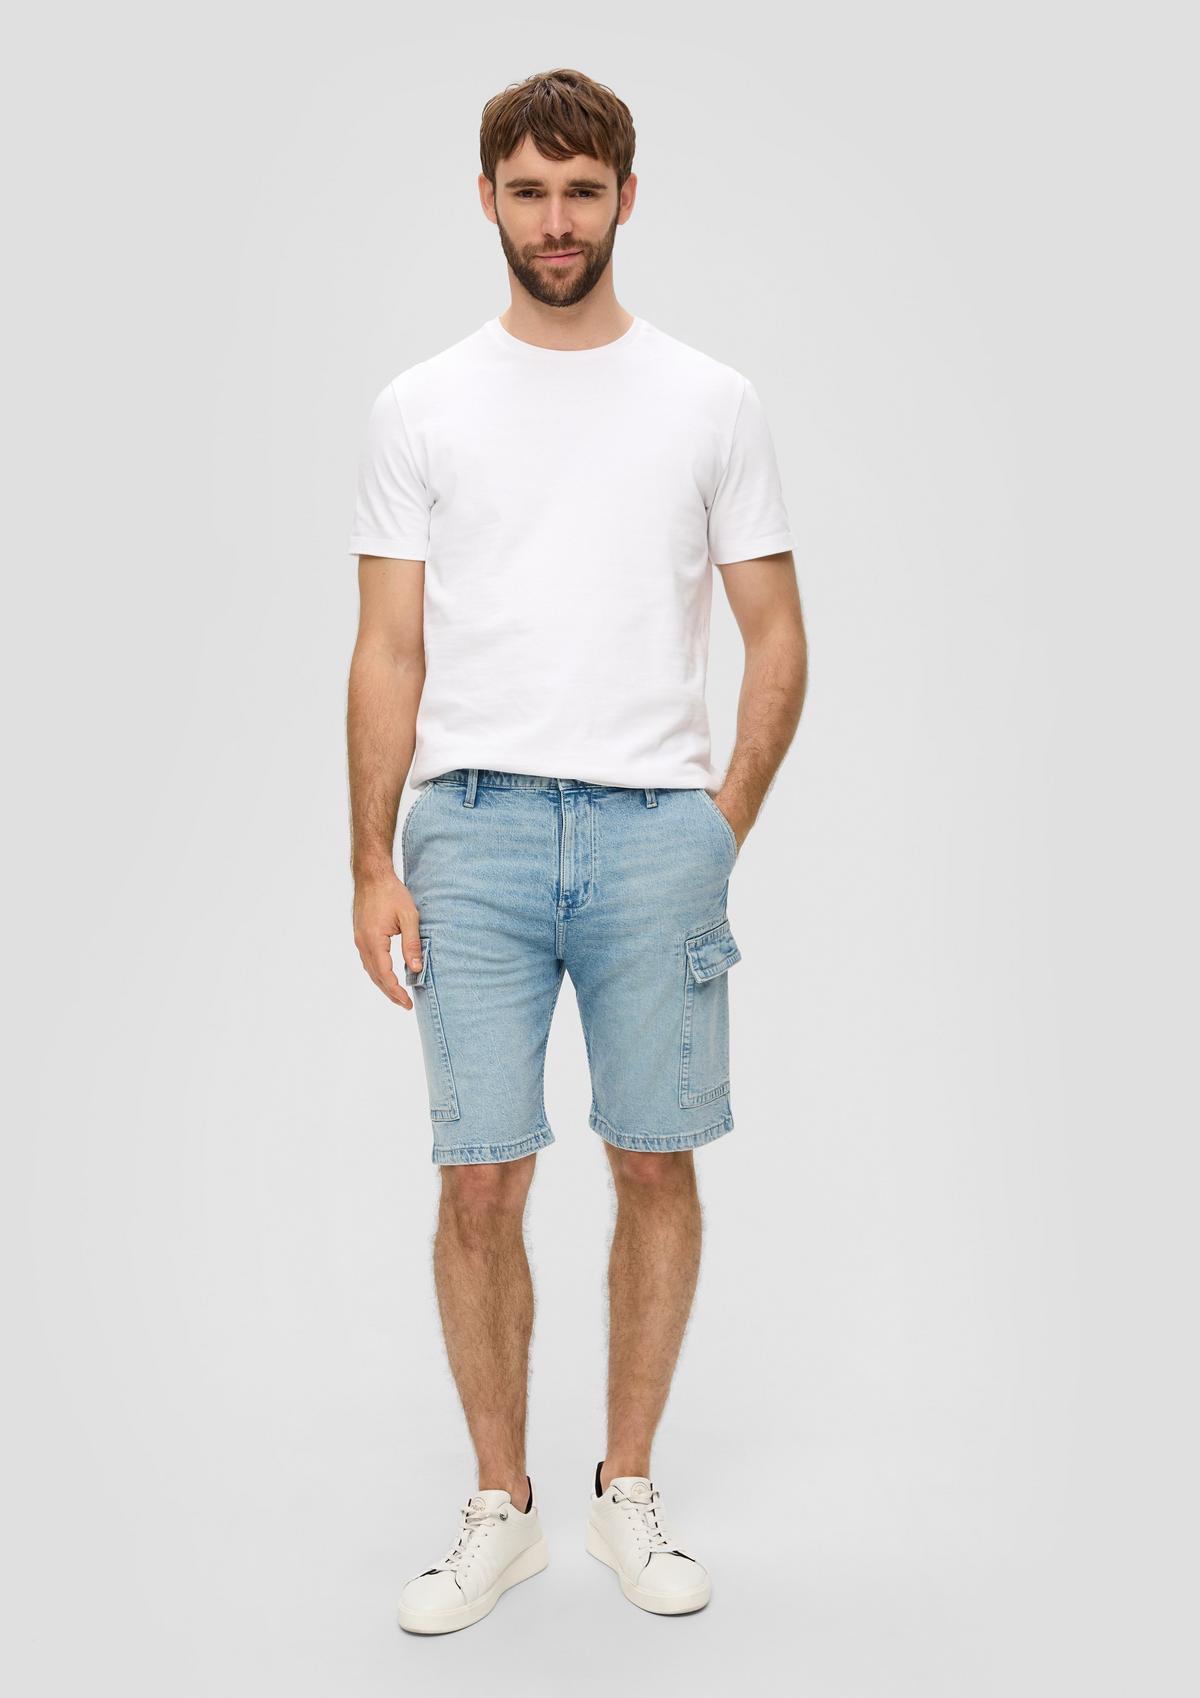 Jeans-Shorts / Regular Fit / High Rise / Straight Leg / Cargotaschen